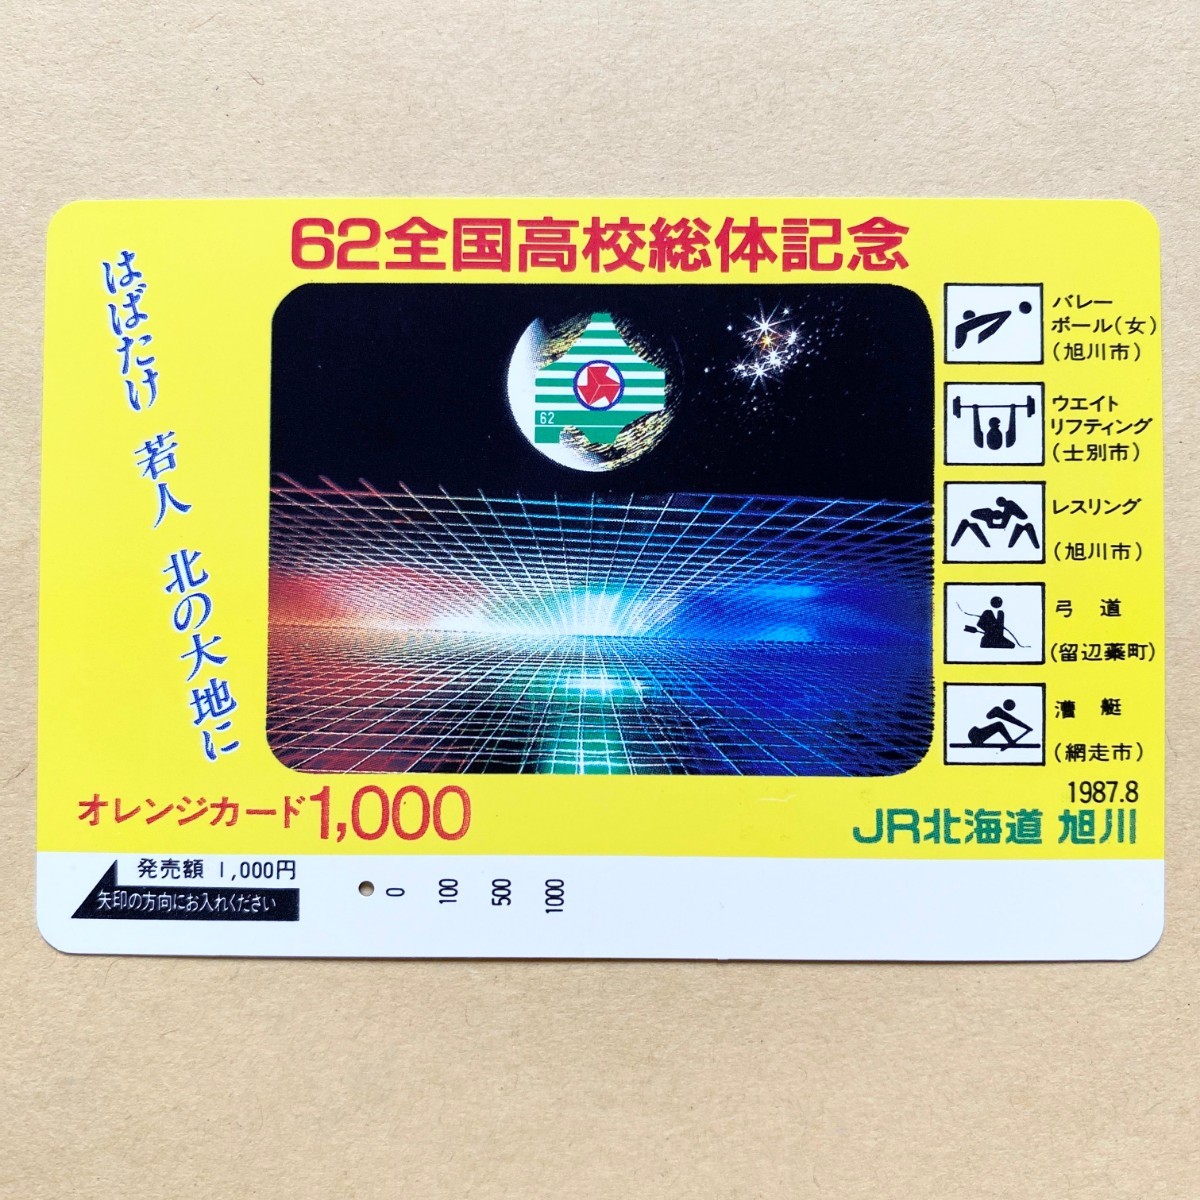 【使用済】 オレンジカード JR北海道 62全国高校総体記念_画像1